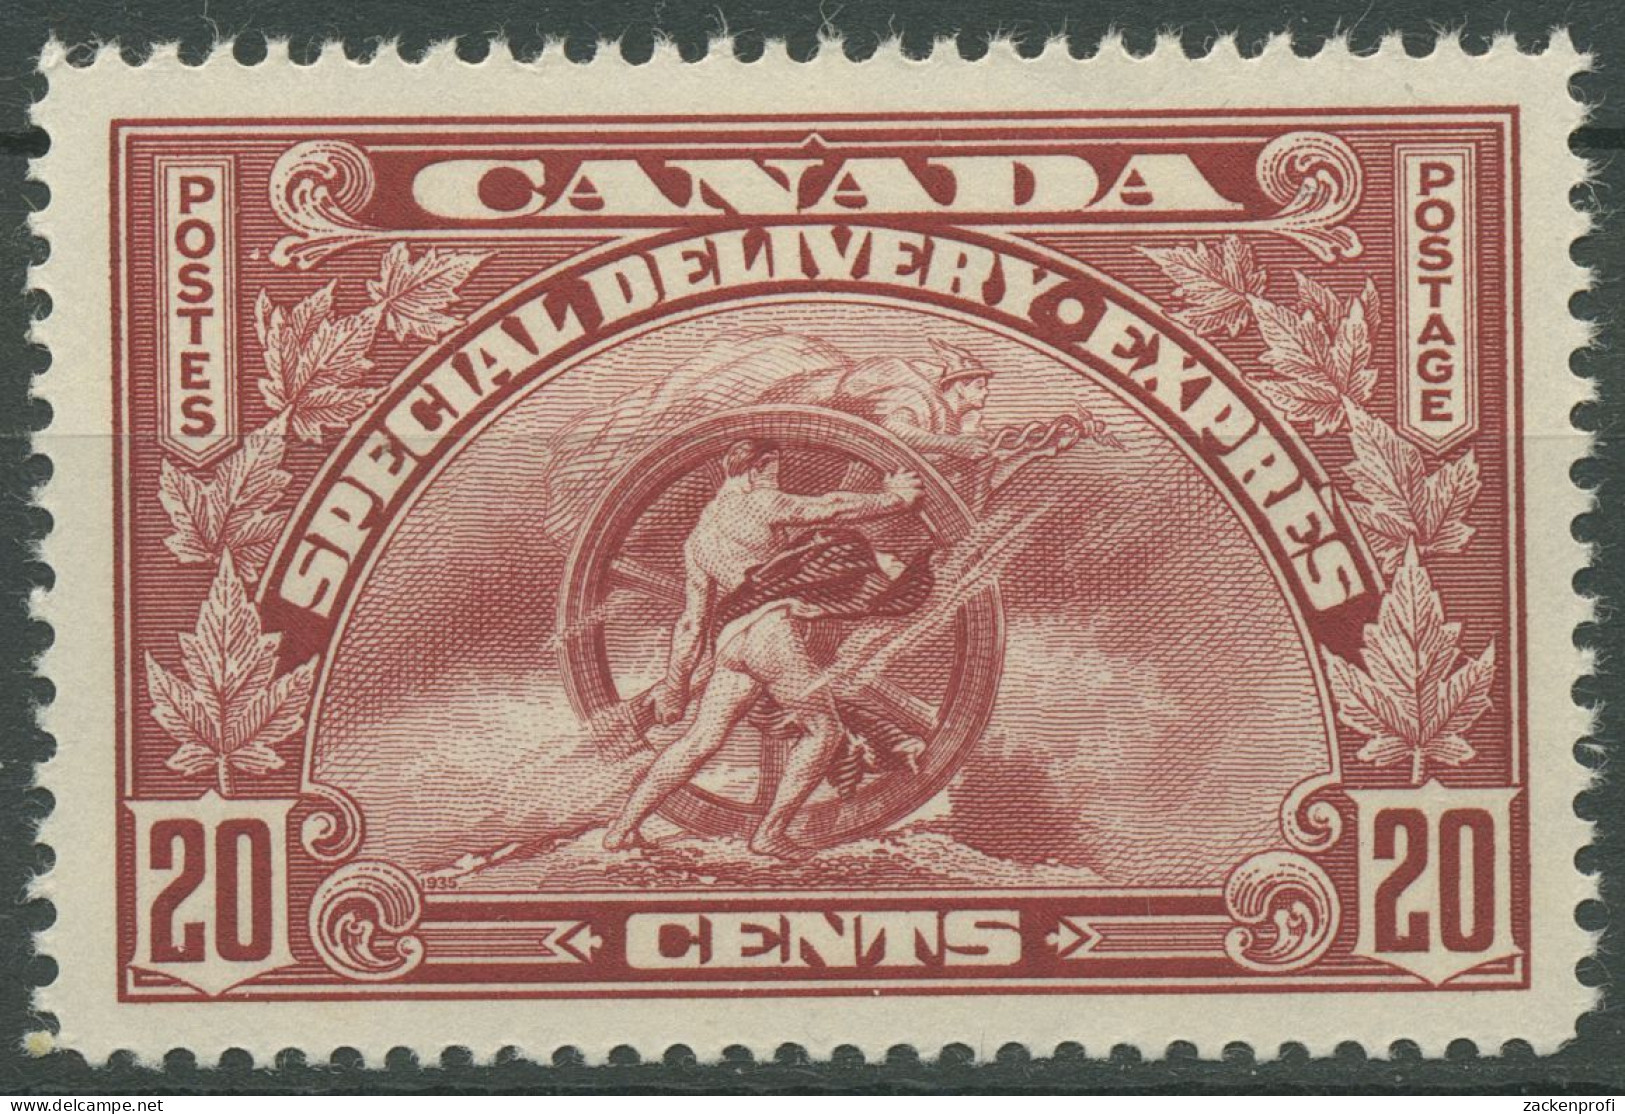 Kanada 1935 Eilmarke Sinnbild Des Fortschritts 195 Mit Falz - Express